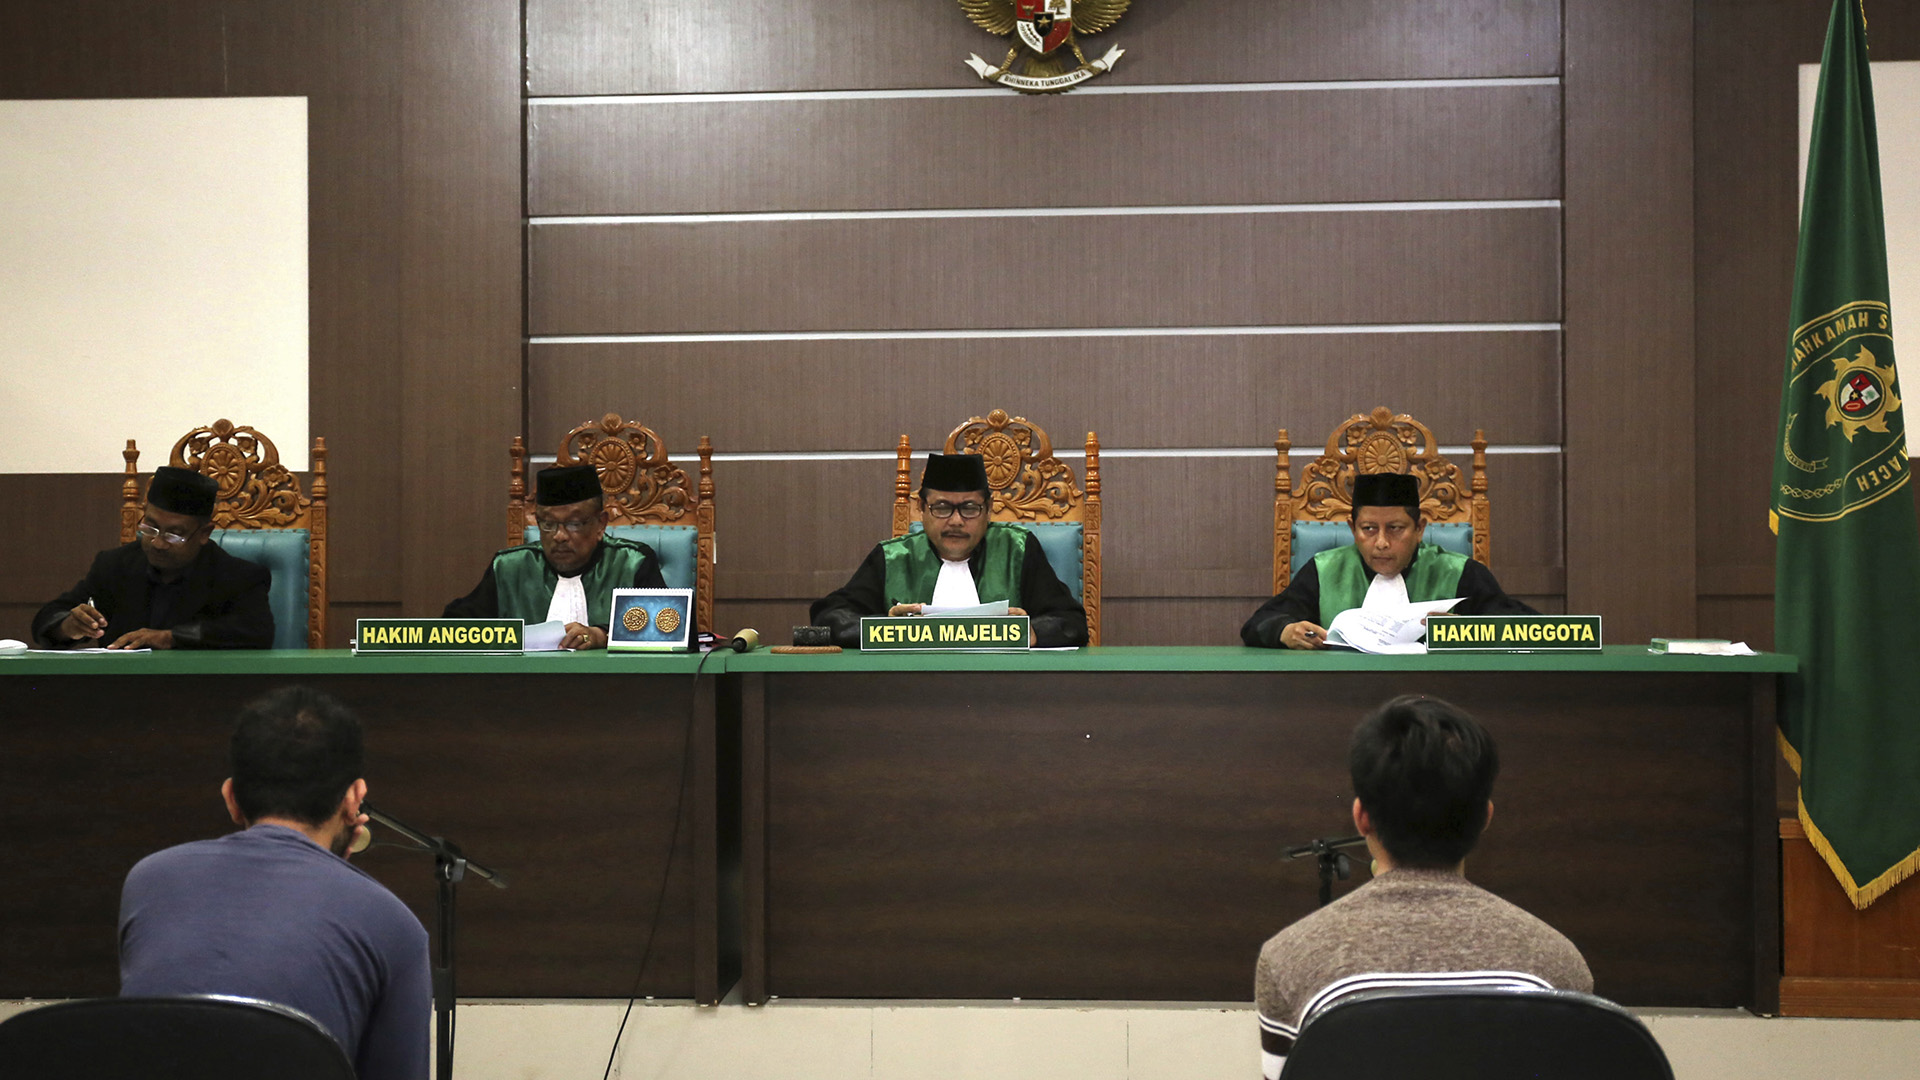 Dos hombres acusados de mantener relaciones sexuales se enfrentan a 80 latigazos en Indonesia